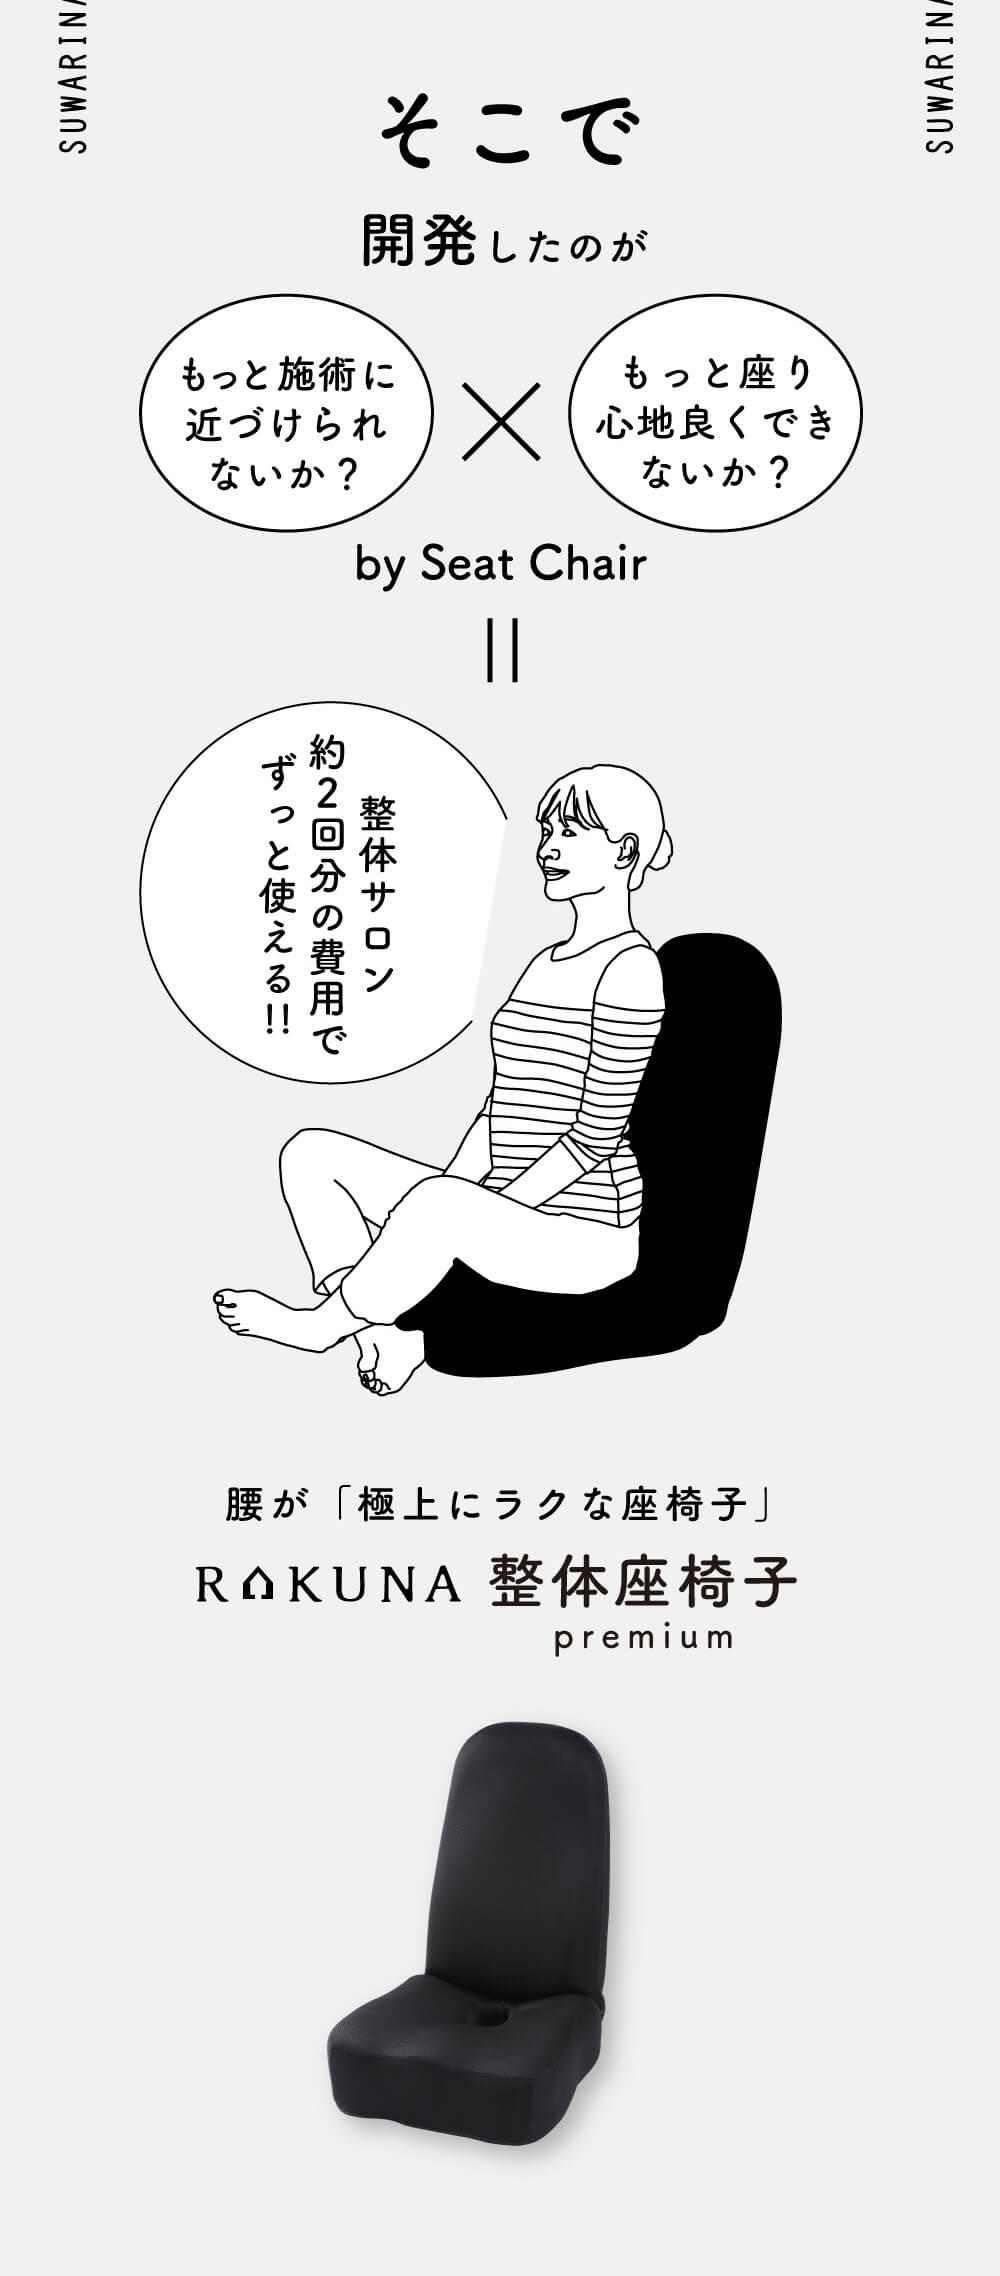 そこで開発したのがこの、腰が「極上にラクな座椅子」RAKUNA整体座椅子premium より施術に近づけ、座り心地を良くするよう開発！整体サロン約２回分の費用でずっと使えます